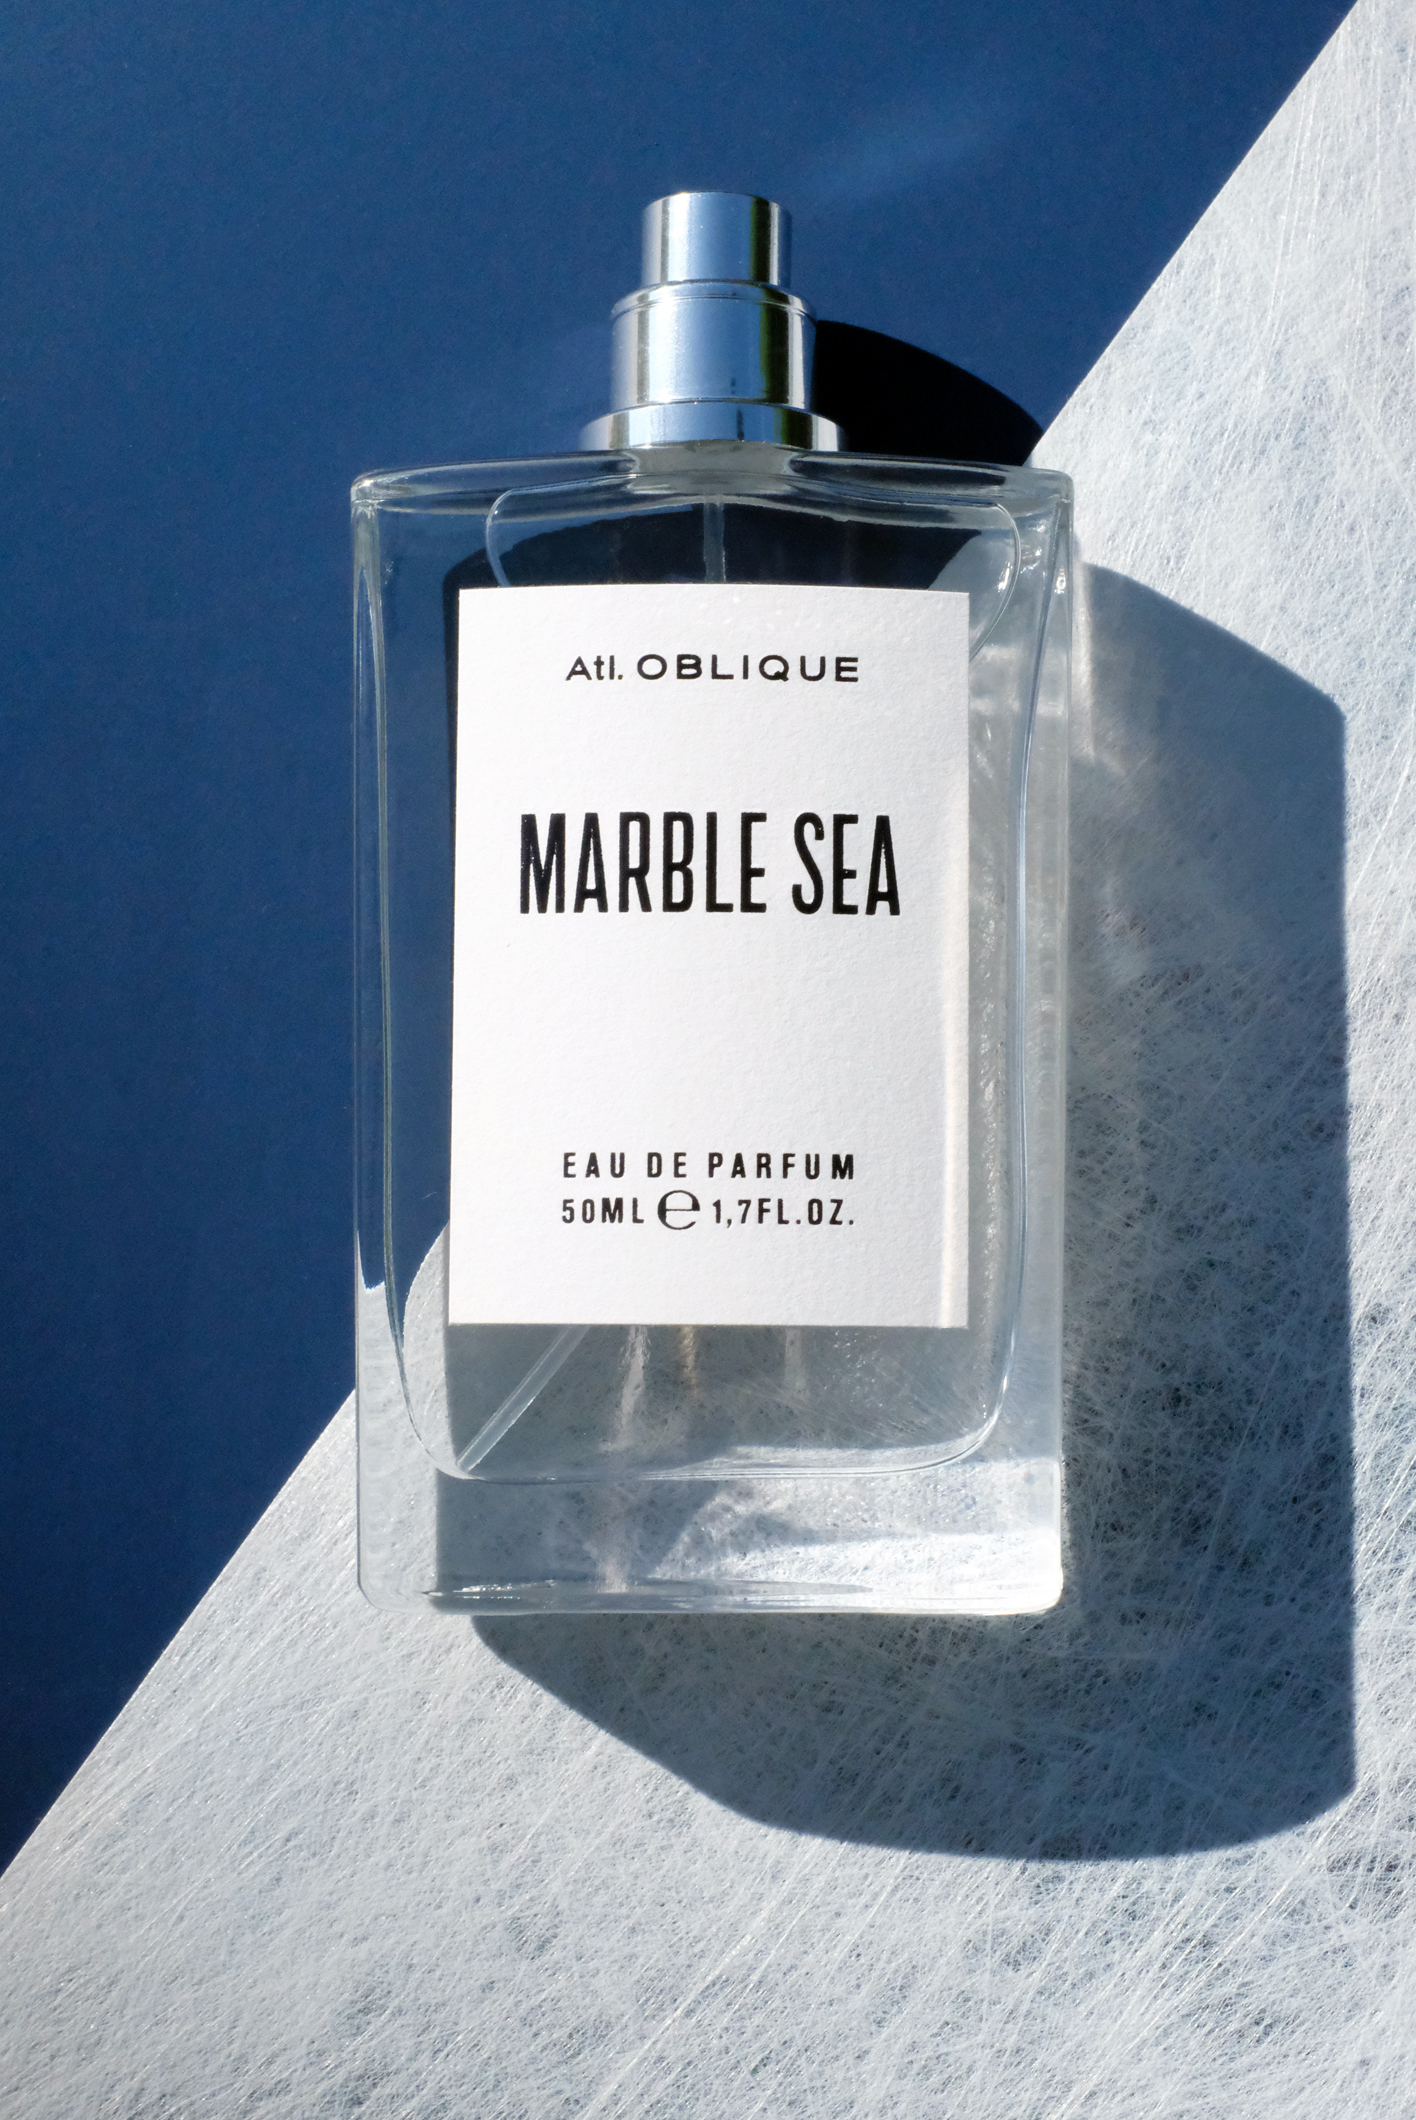 Atl. Oblique Marble Sea Eau de Parfum Front View